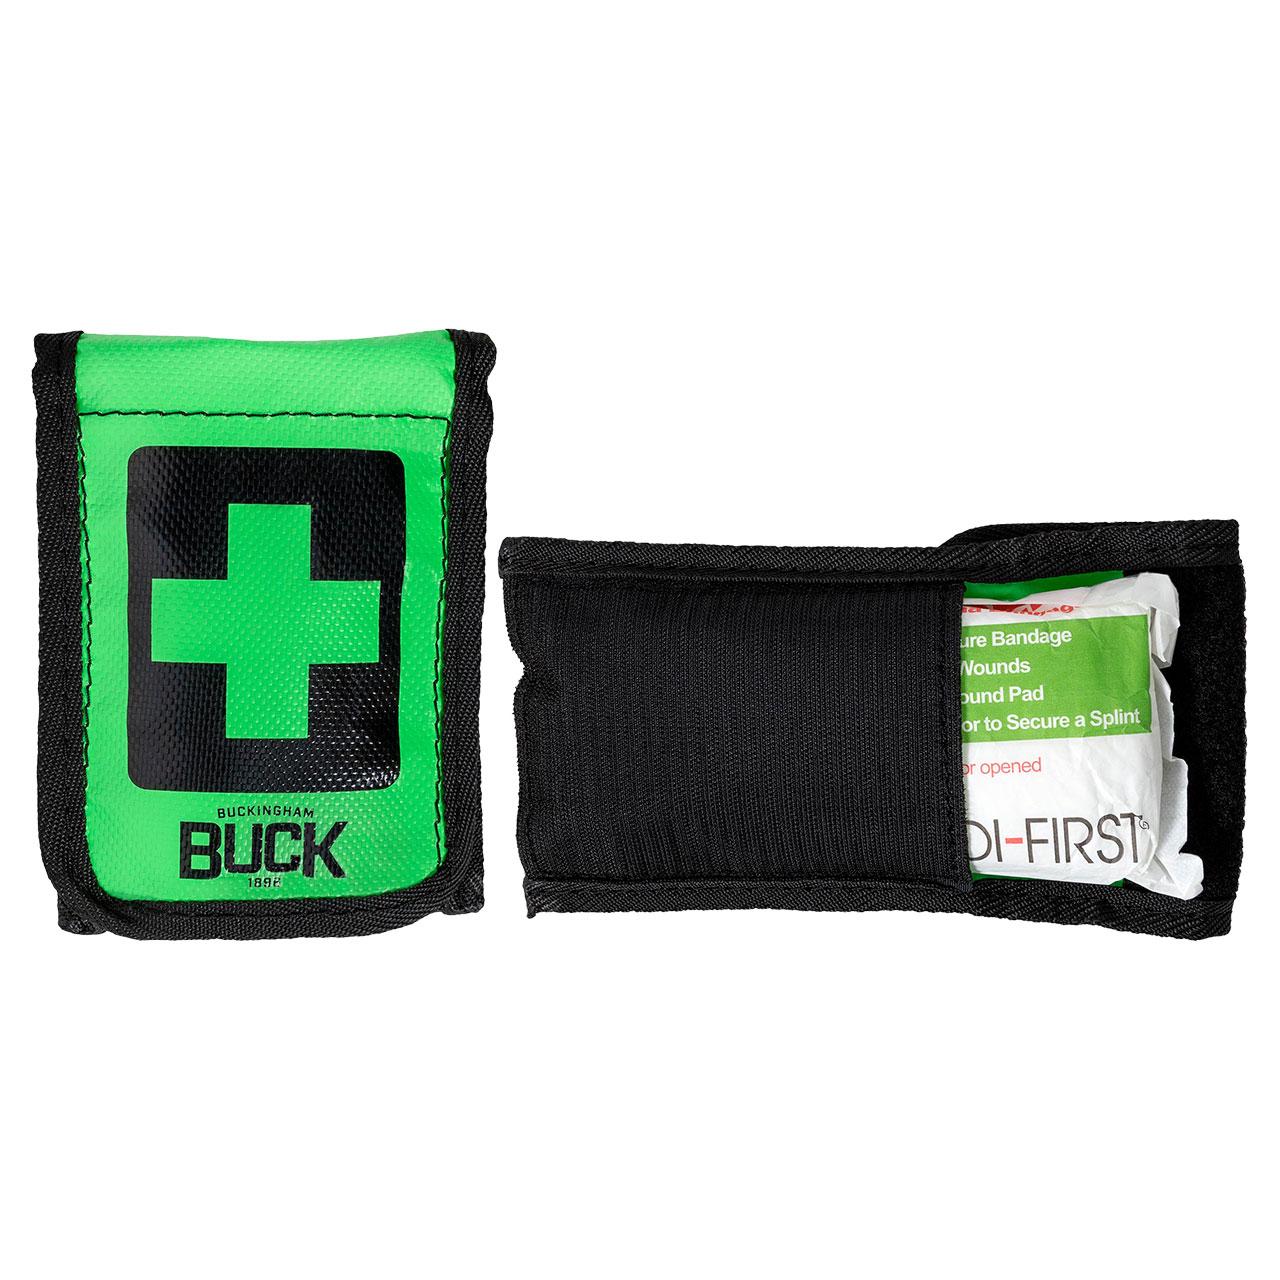 bloodstopper pouch emergency bandag